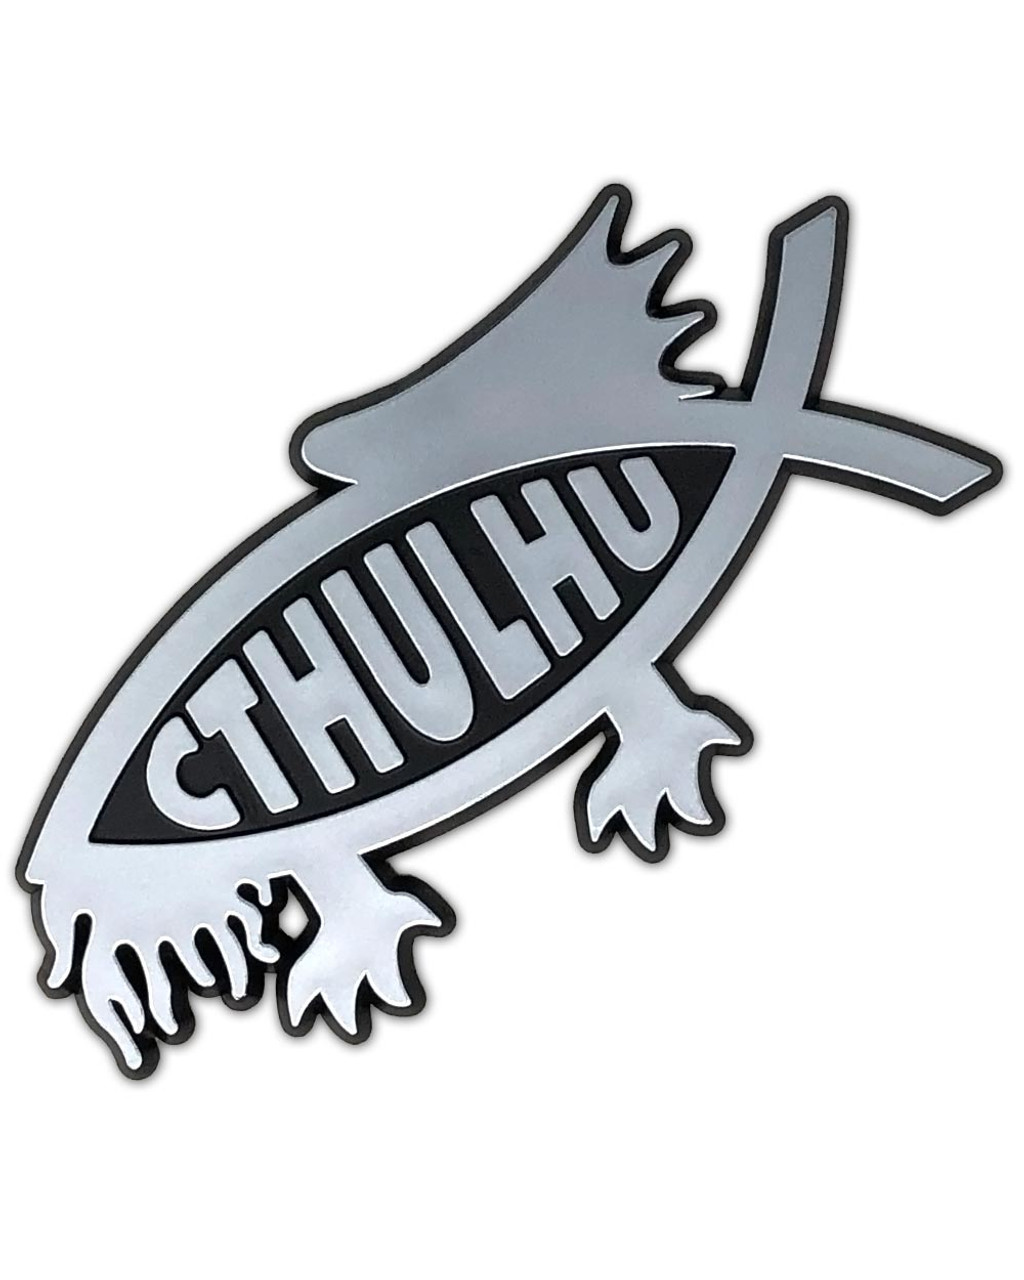 Cthulhu Fish